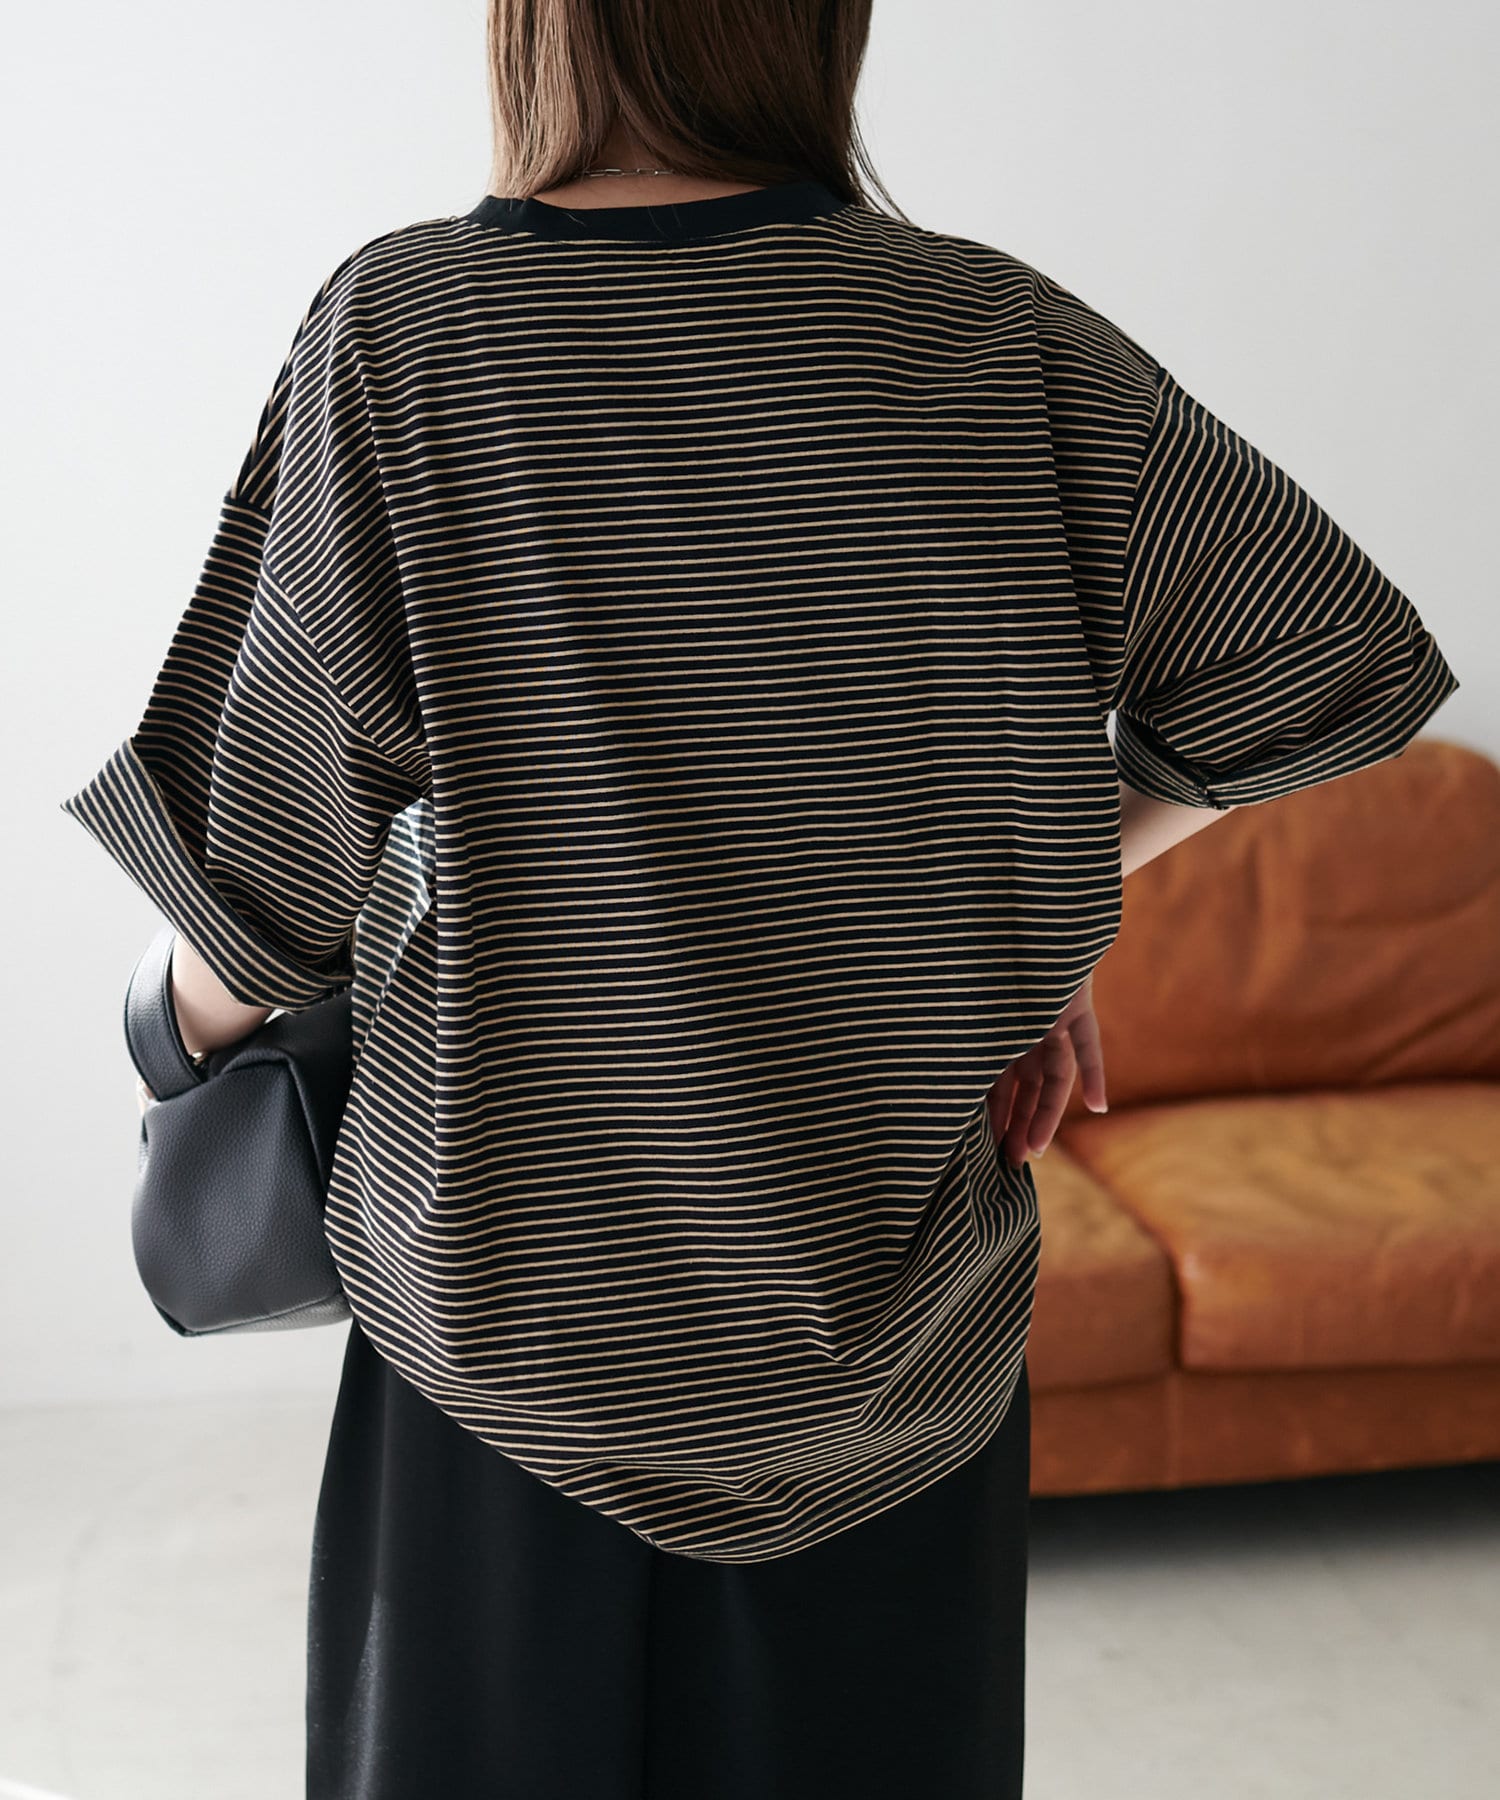 Discoat(ディスコート) 【WEB限定】ボーダービッグ半袖Tシャツ